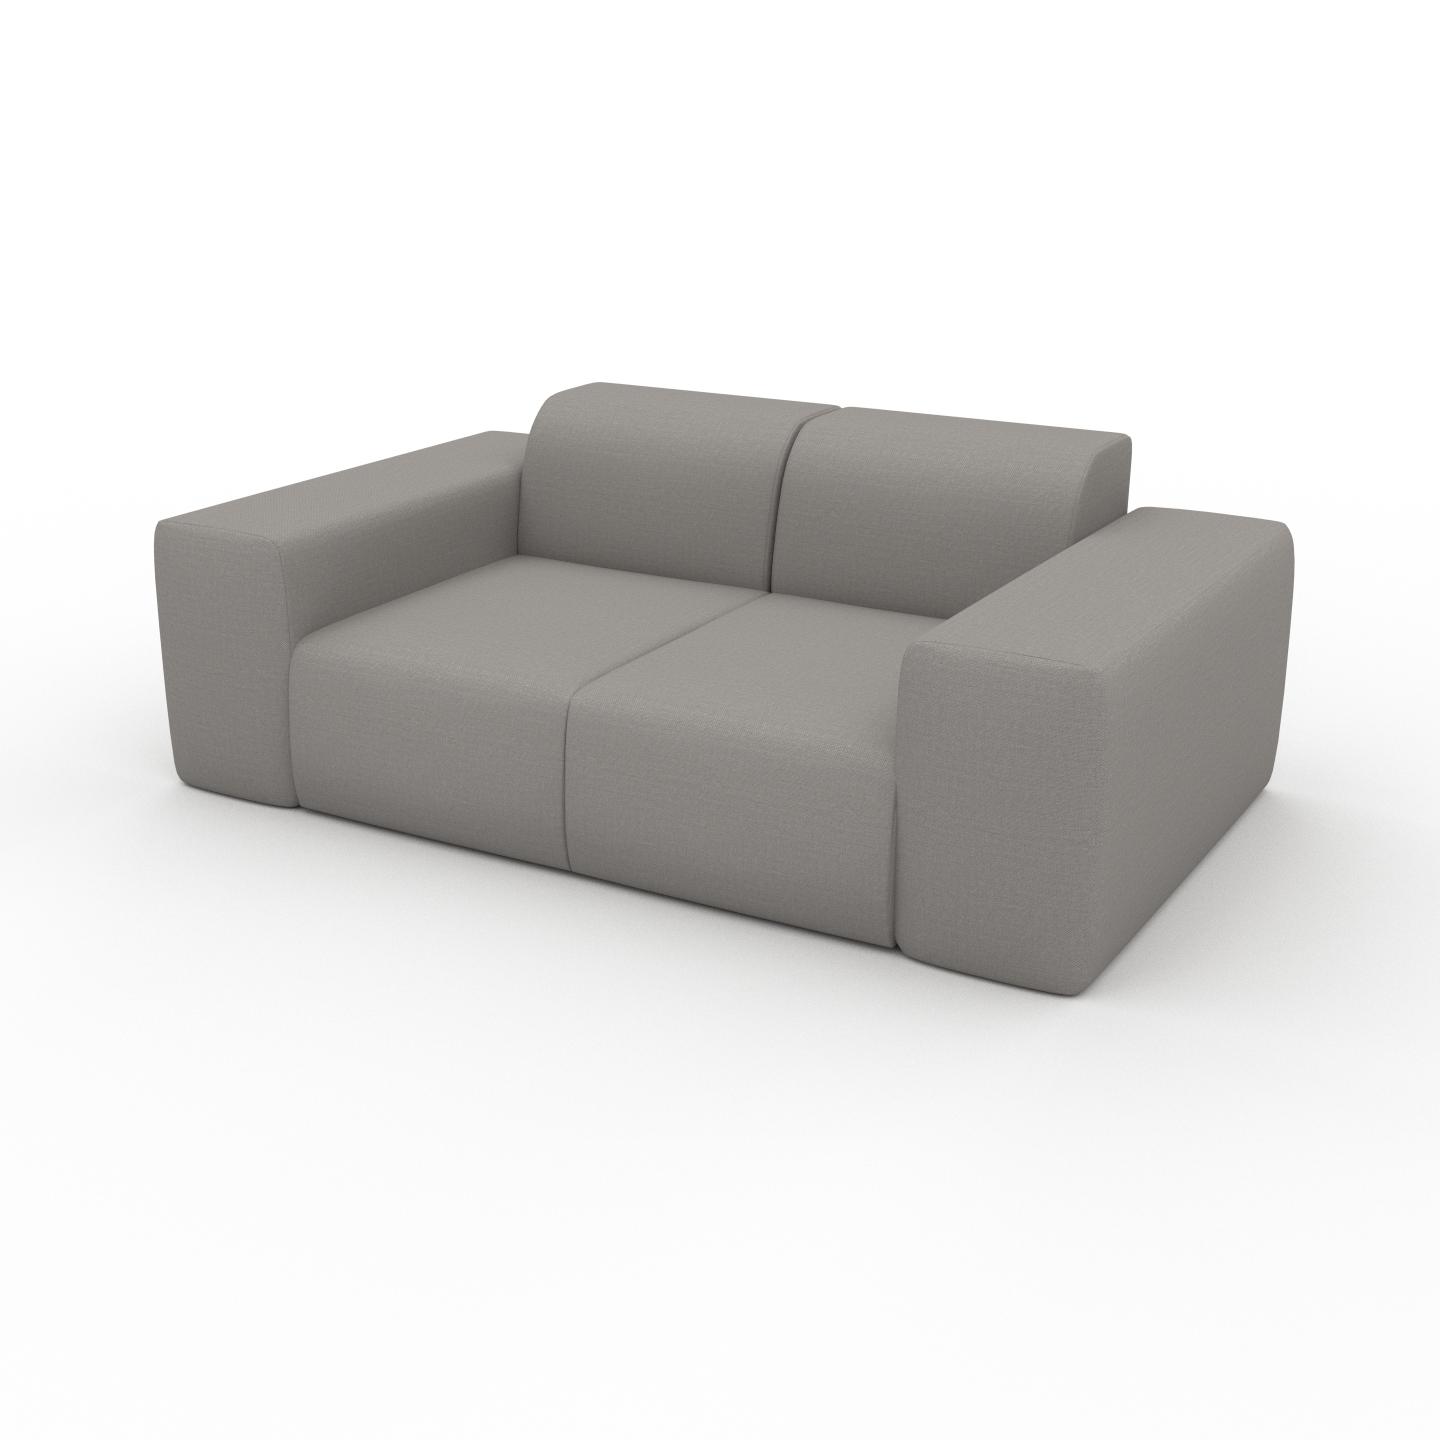 MYCS Sofa Sandgrau - Moderne Designer-Couch: Hochwertige Qualität, einzigartiges Design - 186 x 72 x 107 cm, Komplett anpassbar